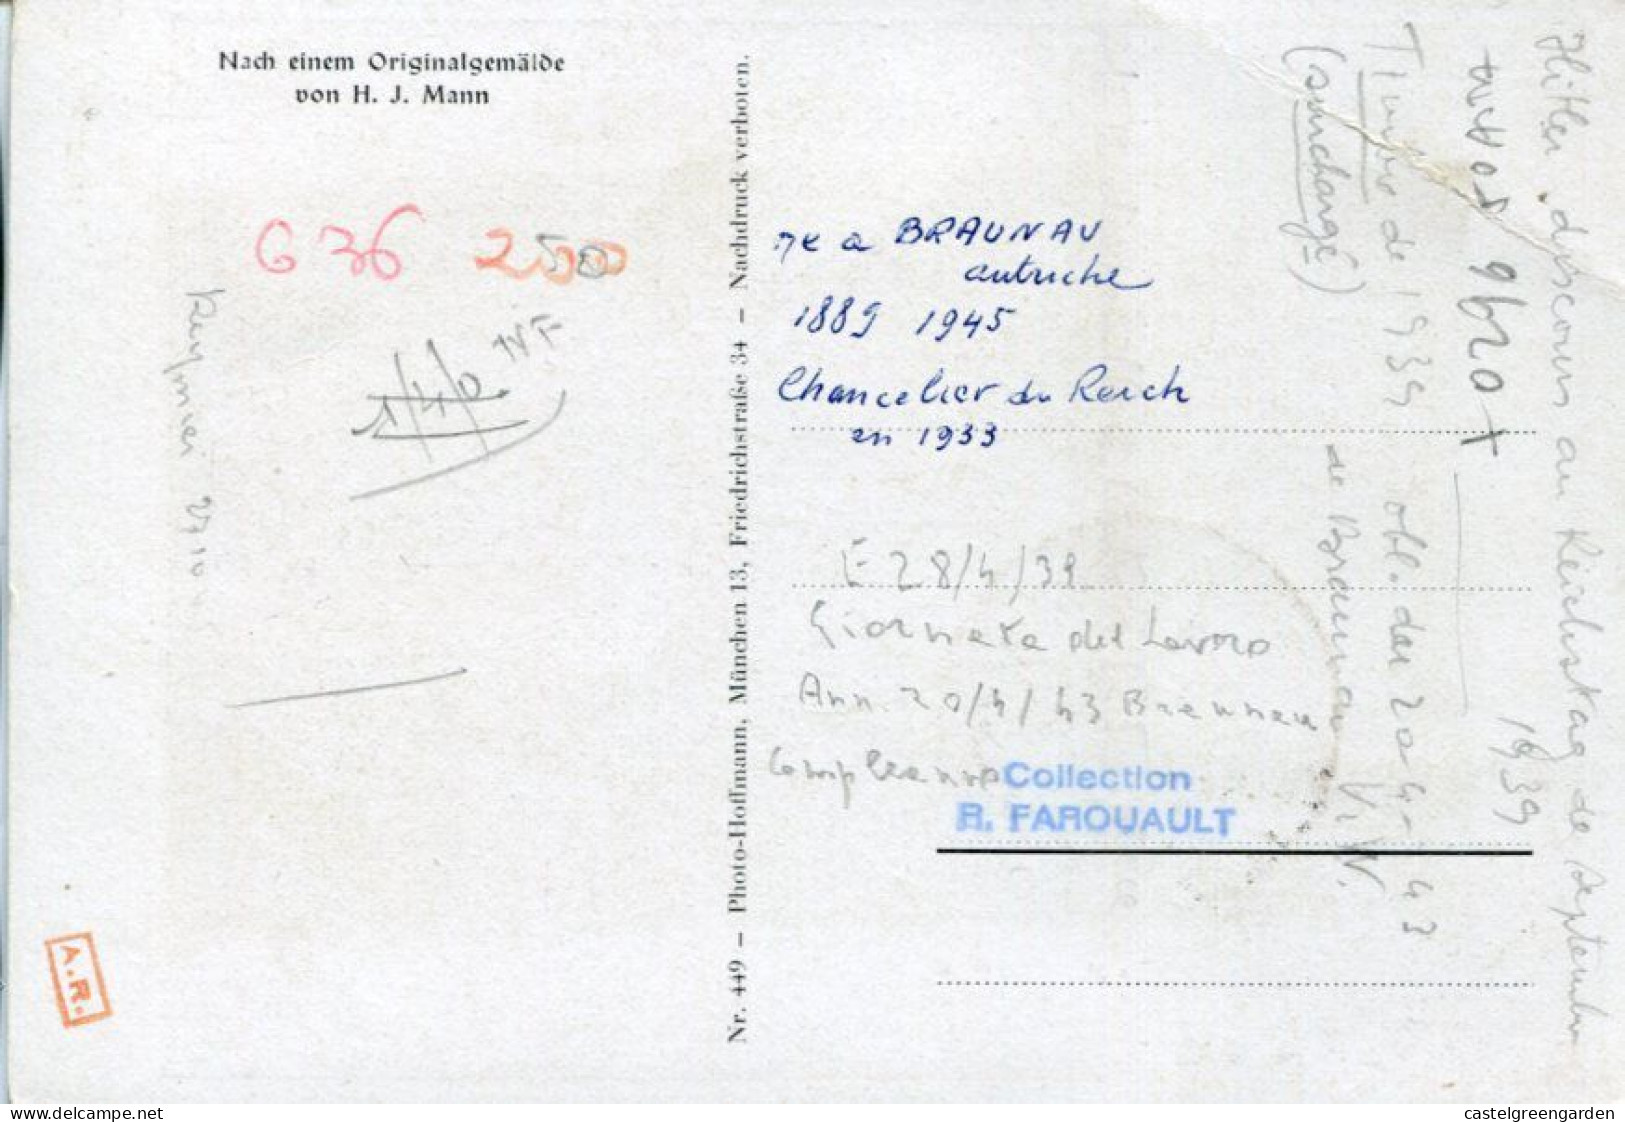 X0296 Germany Reich,maximum 28.4.1943 Braunau (Inn) 6+19,Unser Fuhrer Adolf Hitler Bannt Bolschewismus,mi-694 - Covers & Documents